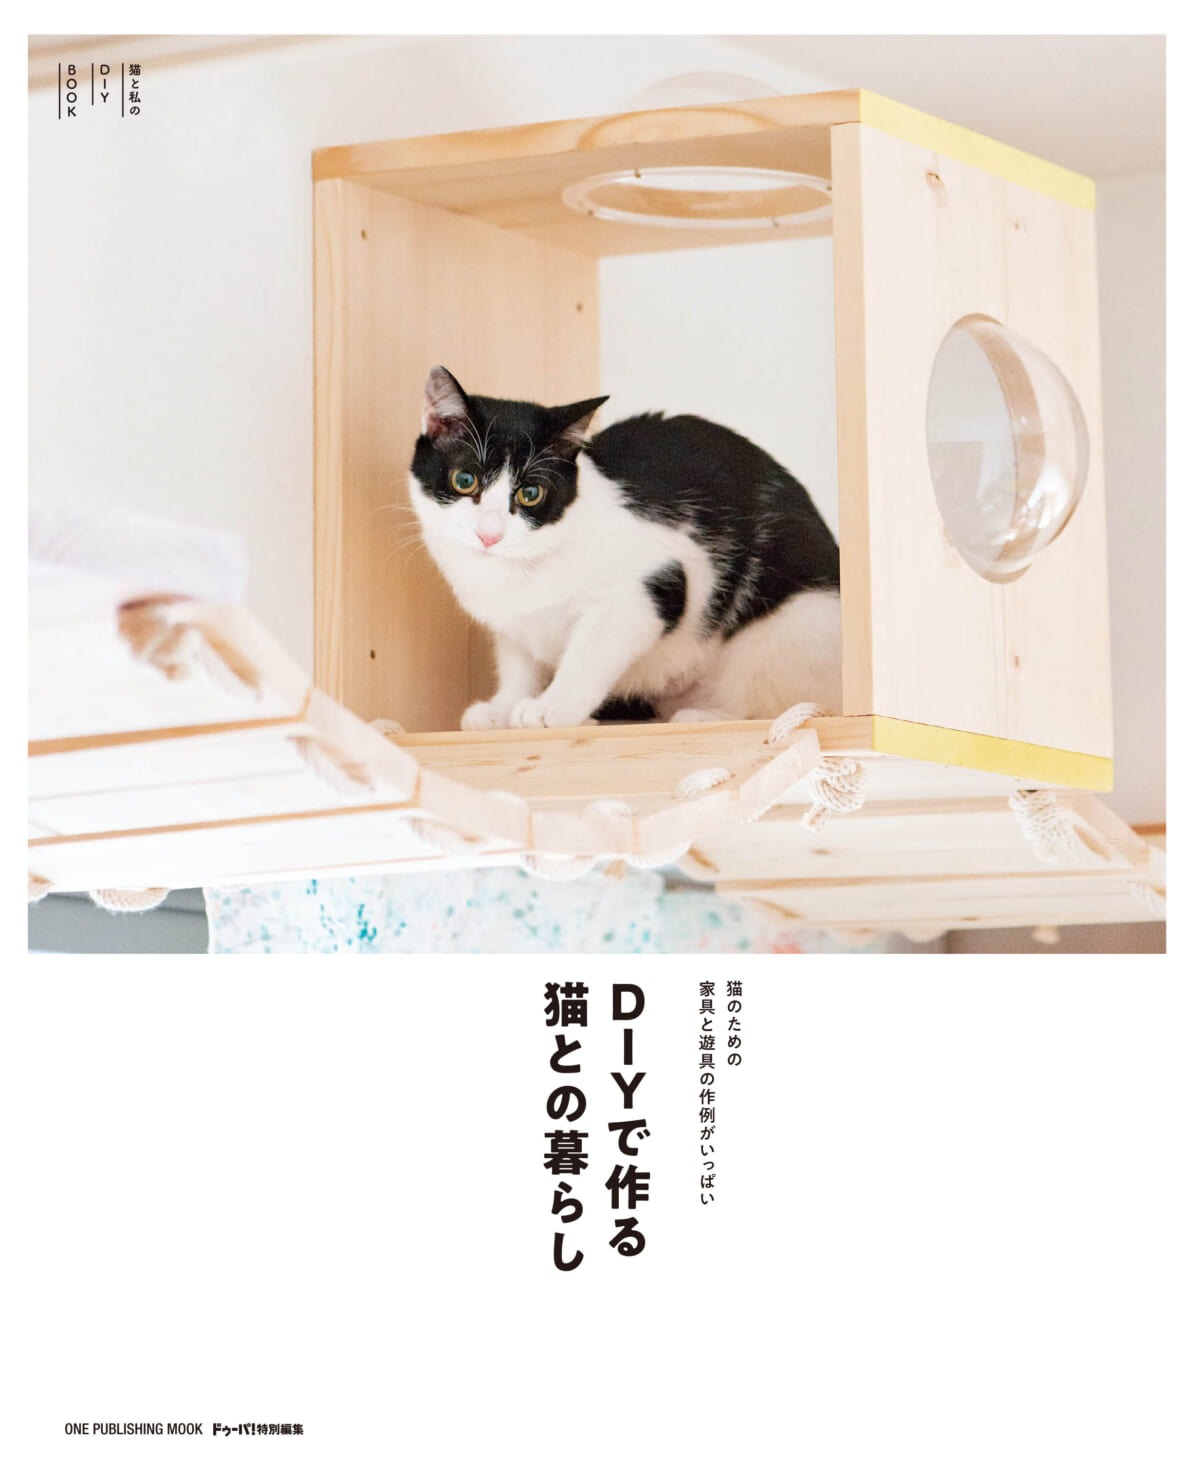 猫が遊べるキャットタワーが作れるかも! ムック『DIYで作る猫との暮らし』が好評発売中 - GetNavi web